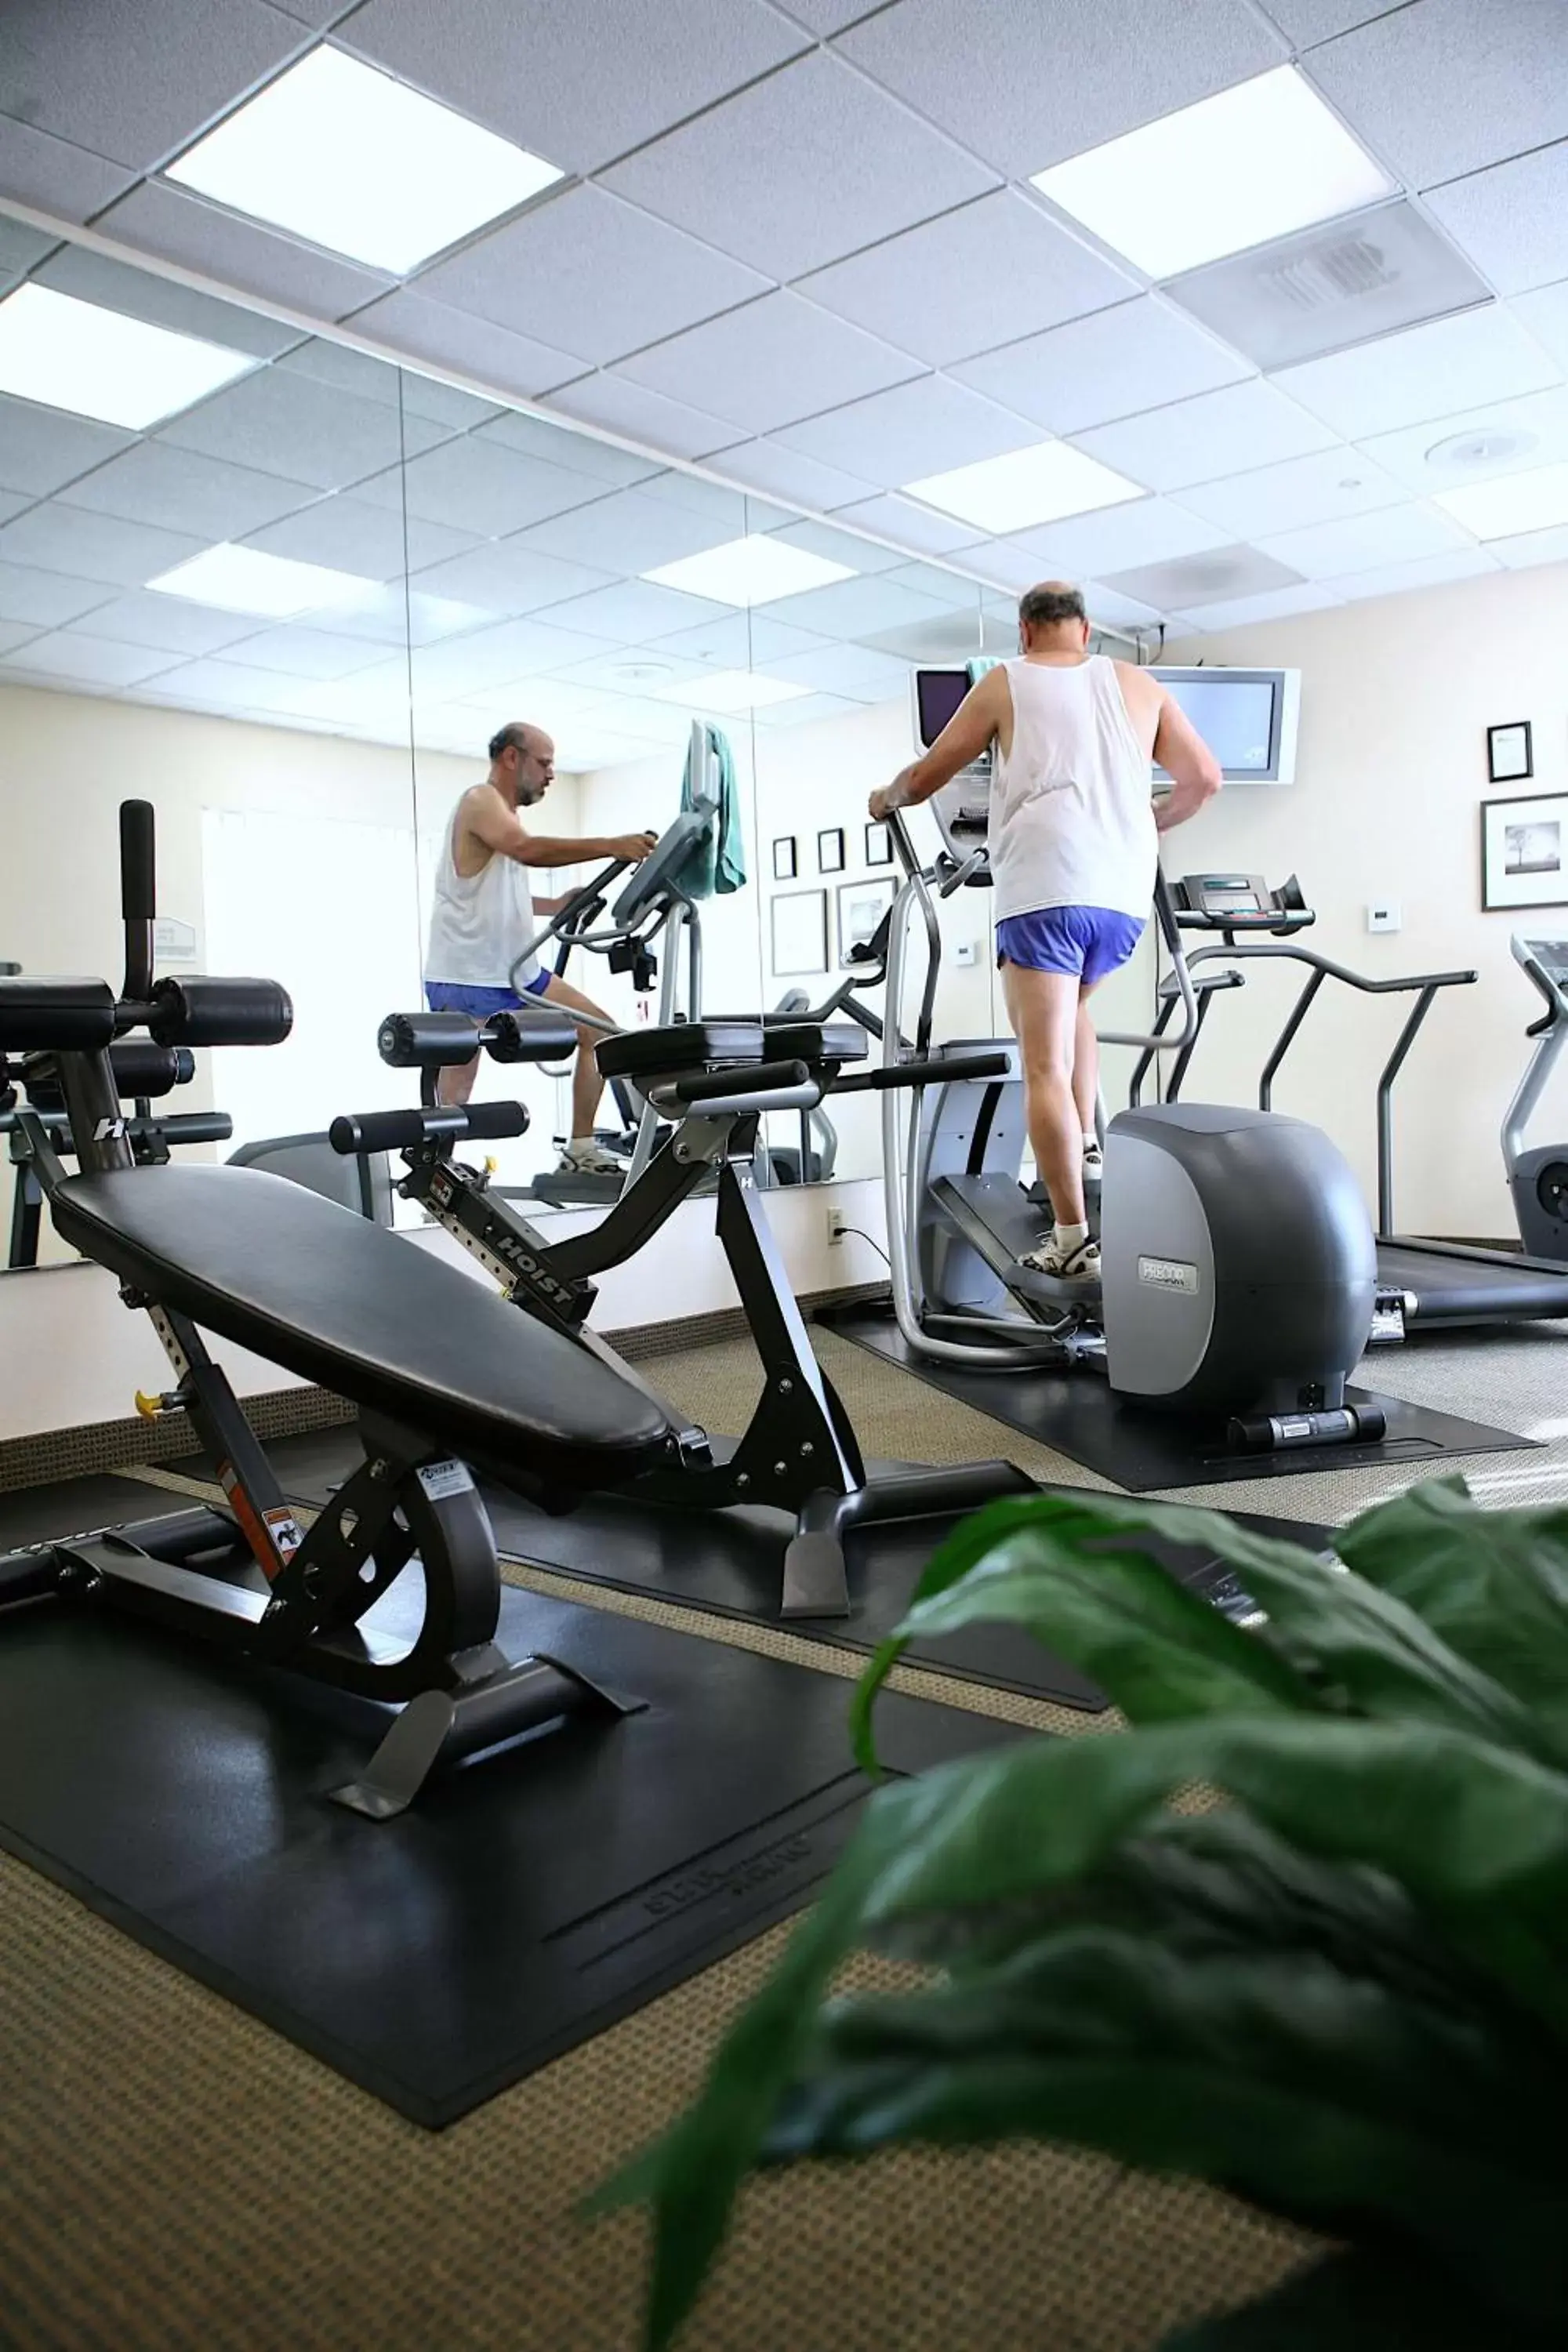 Fitness centre/facilities, Fitness Center/Facilities in Hilton Garden Inn Calabasas